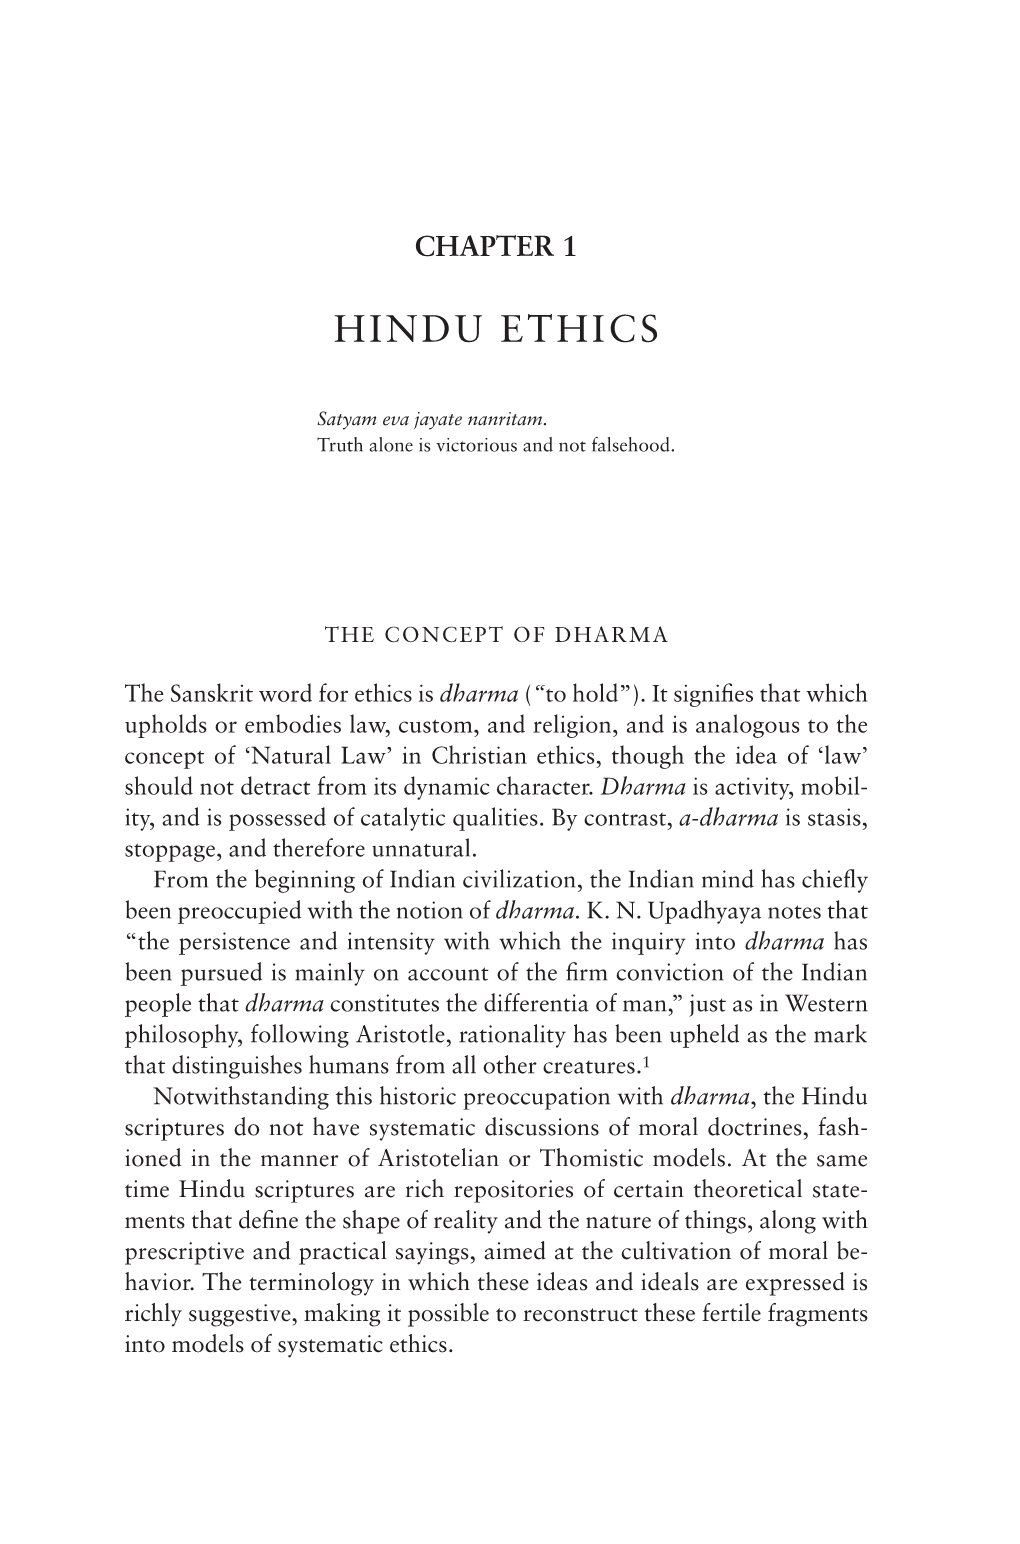 Hindu Ethics